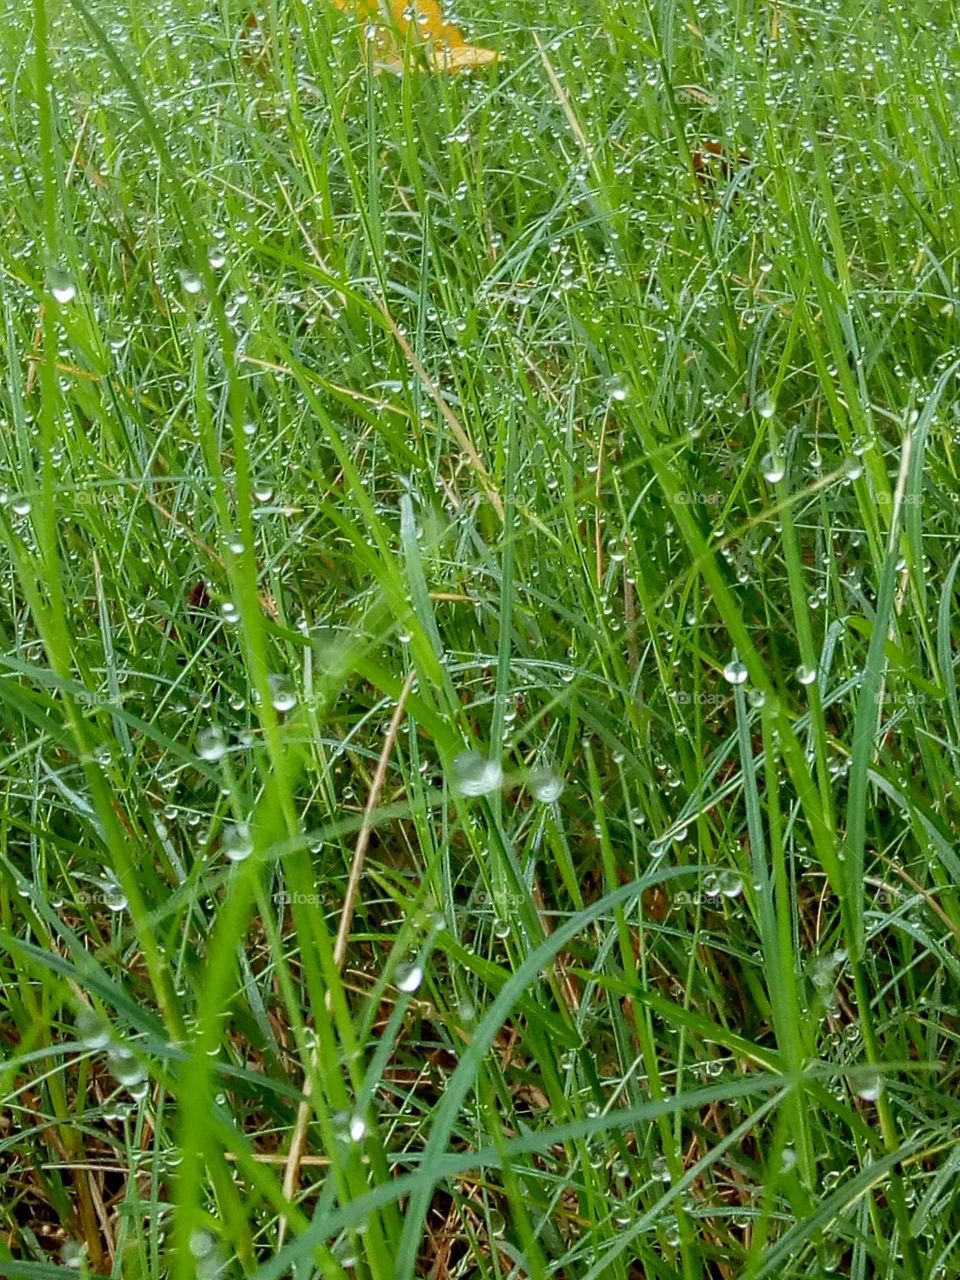 The rain fell on grass.